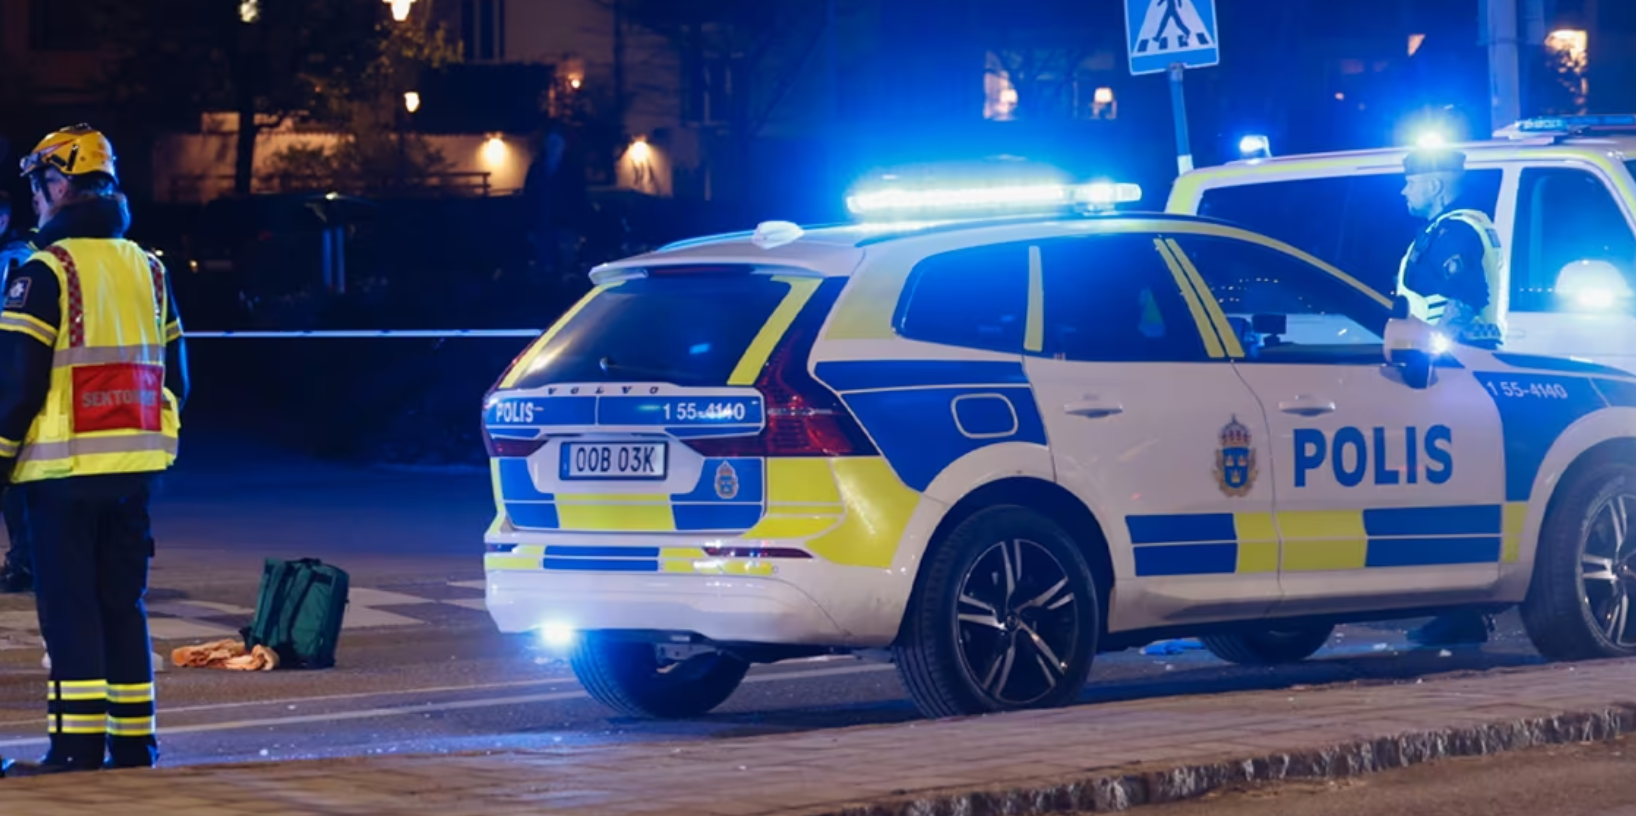  إصابة شرطي في هالمستاد.. والشرطة تشتبه بمحاولة القتل